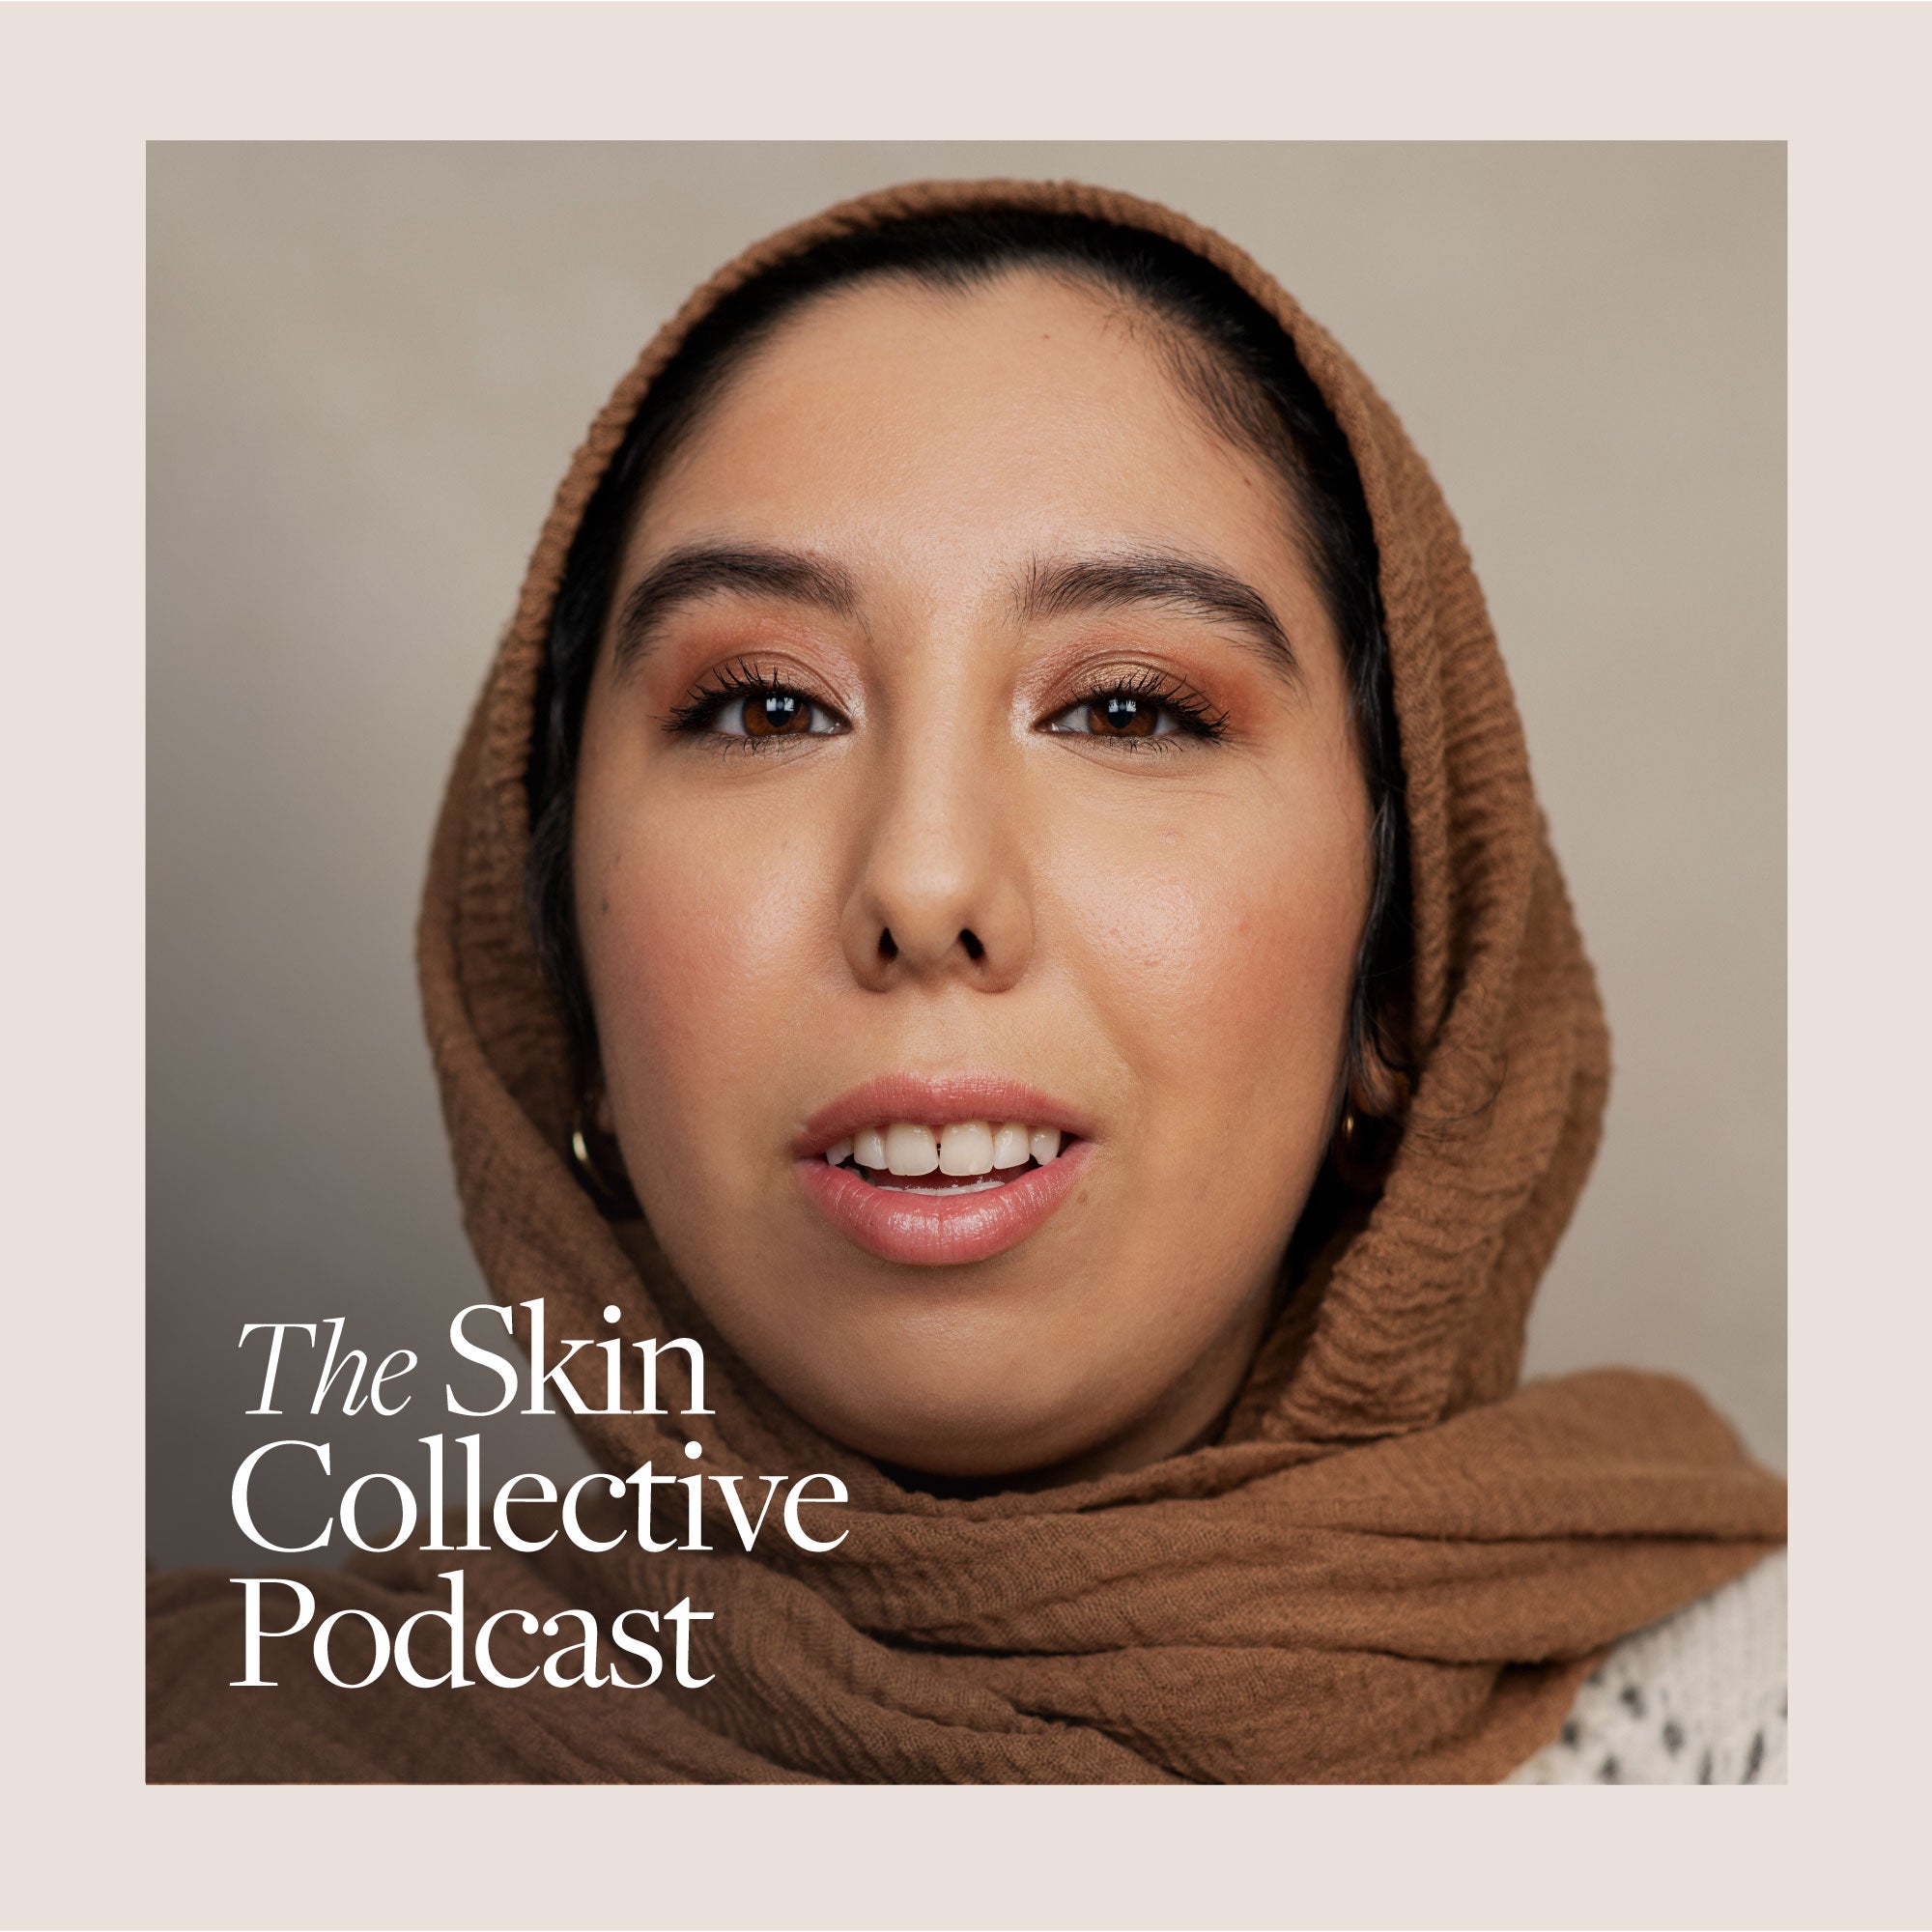 SÉRIE: La peau de chaque femme a son histoire. Écoutez Nada raconter son parcours.